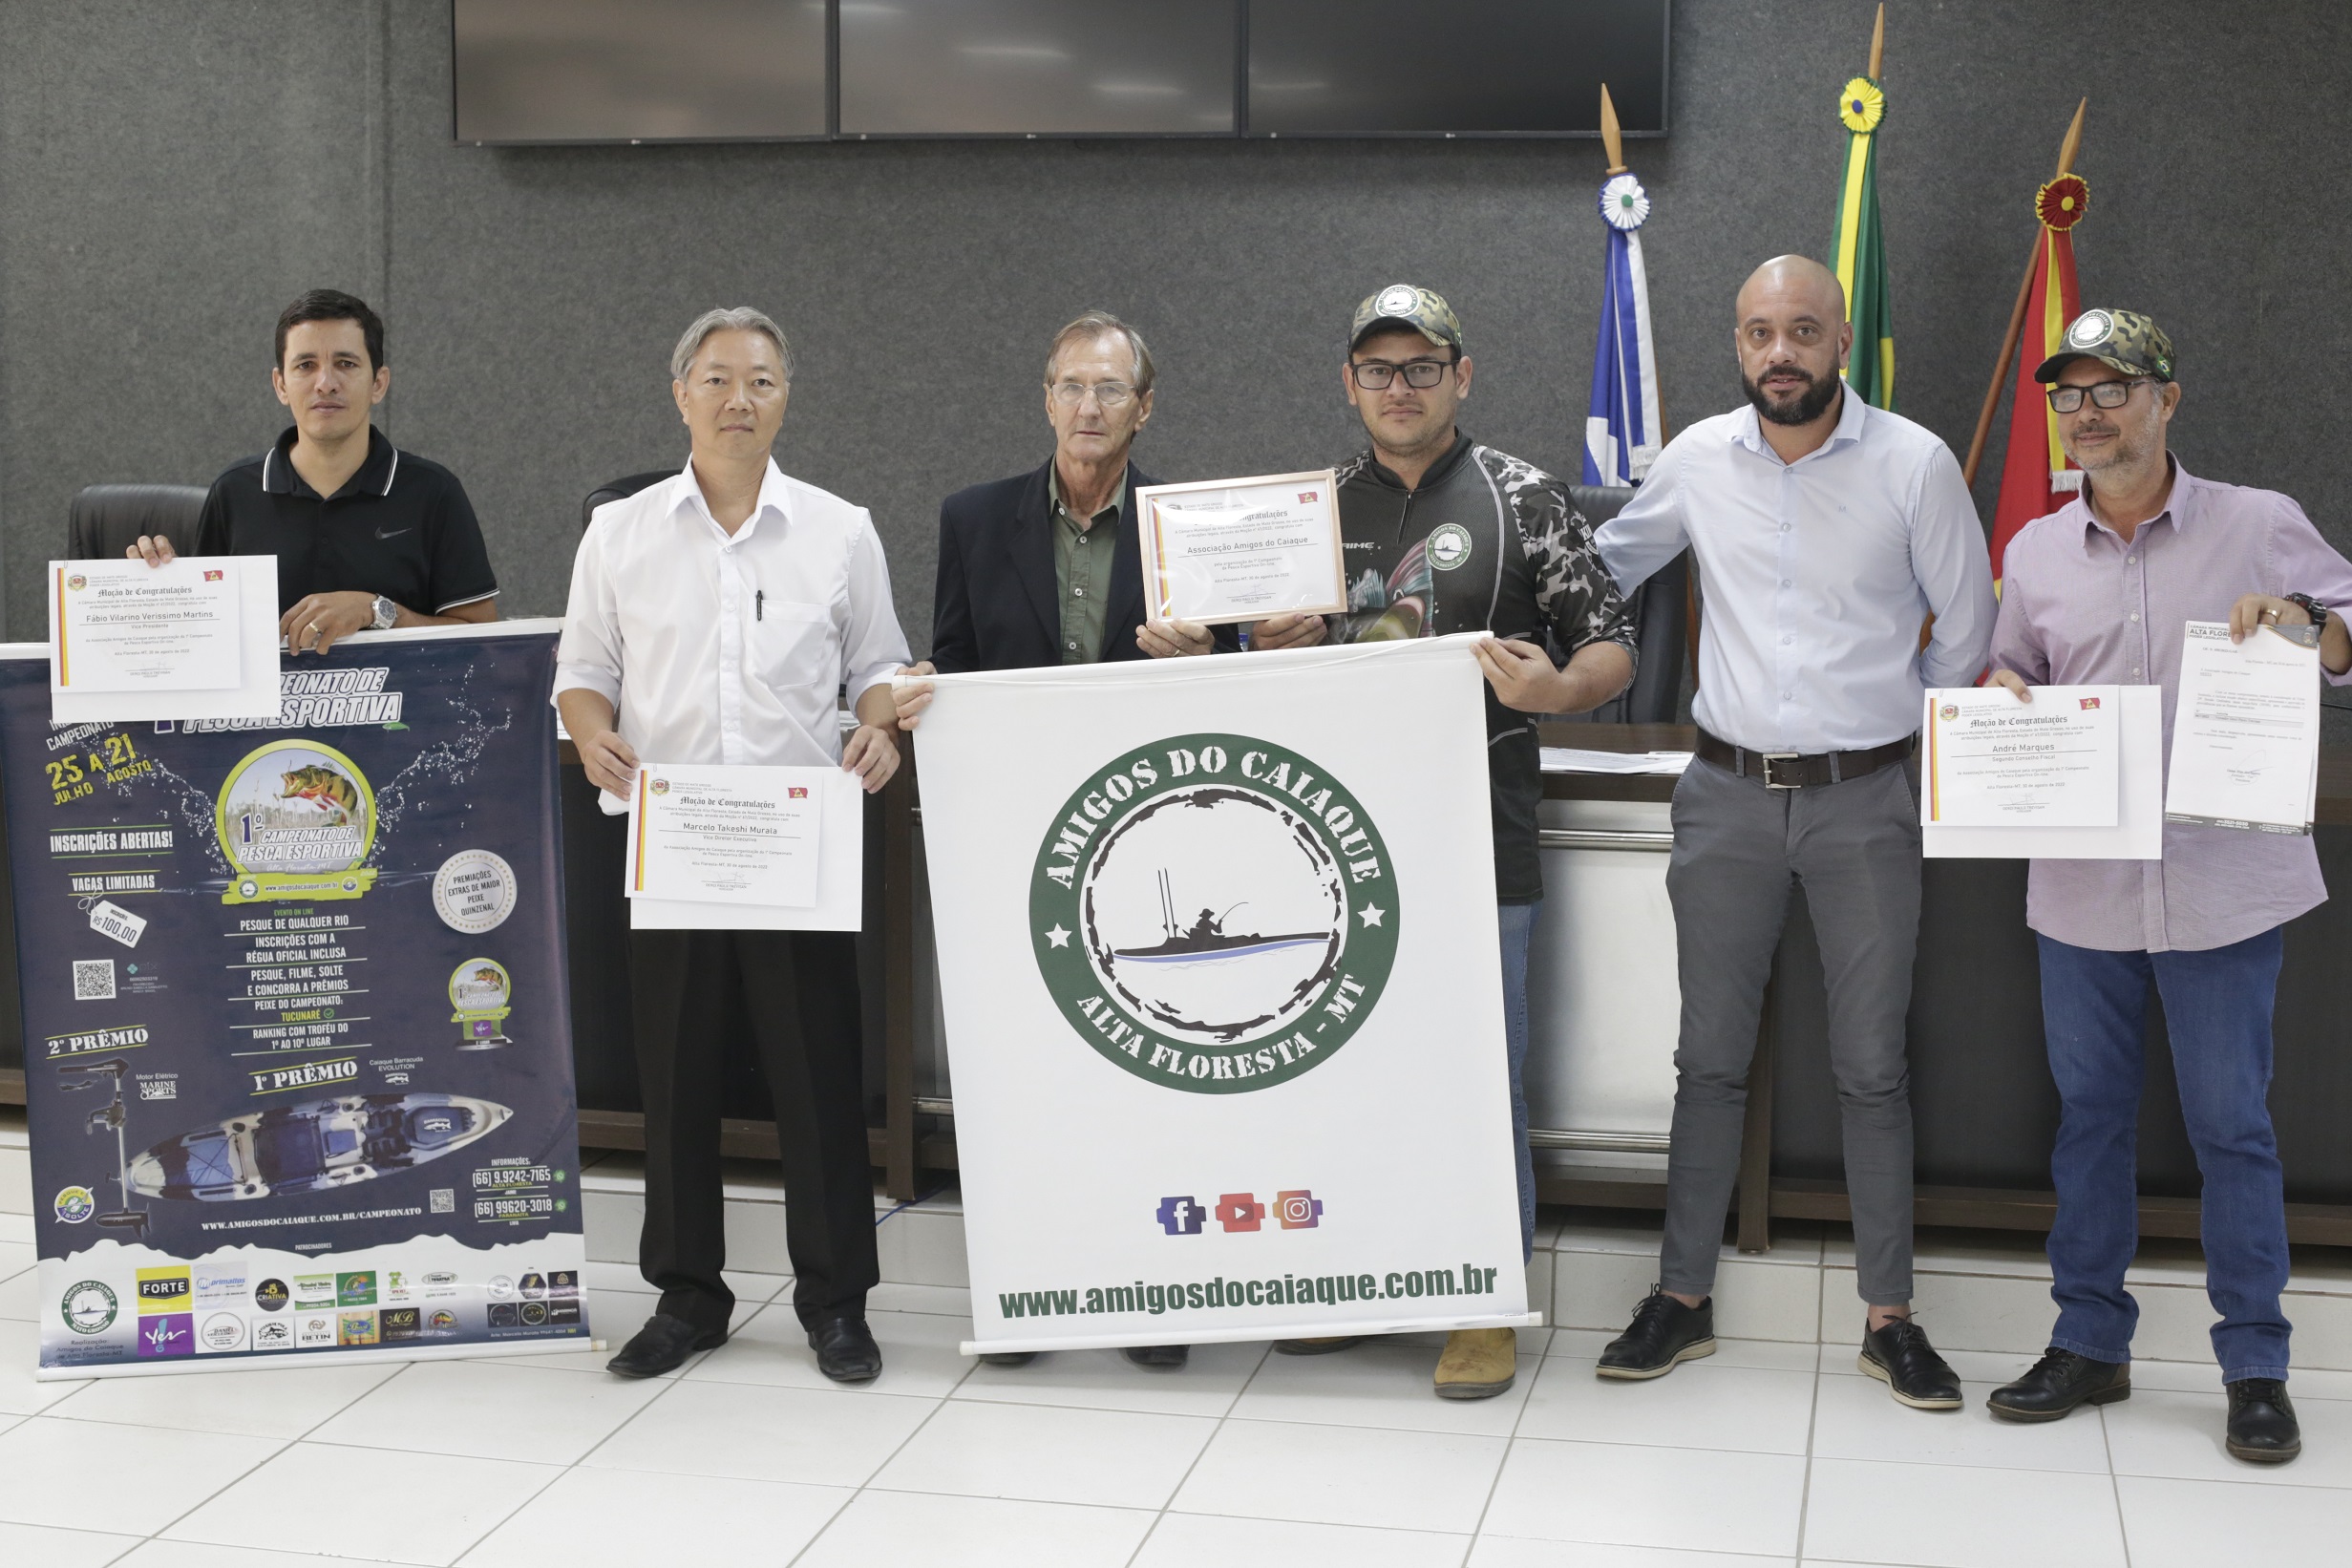 Vereador Pitoco concede Moção de Congratulações para a Associação Amigos do Caiaque